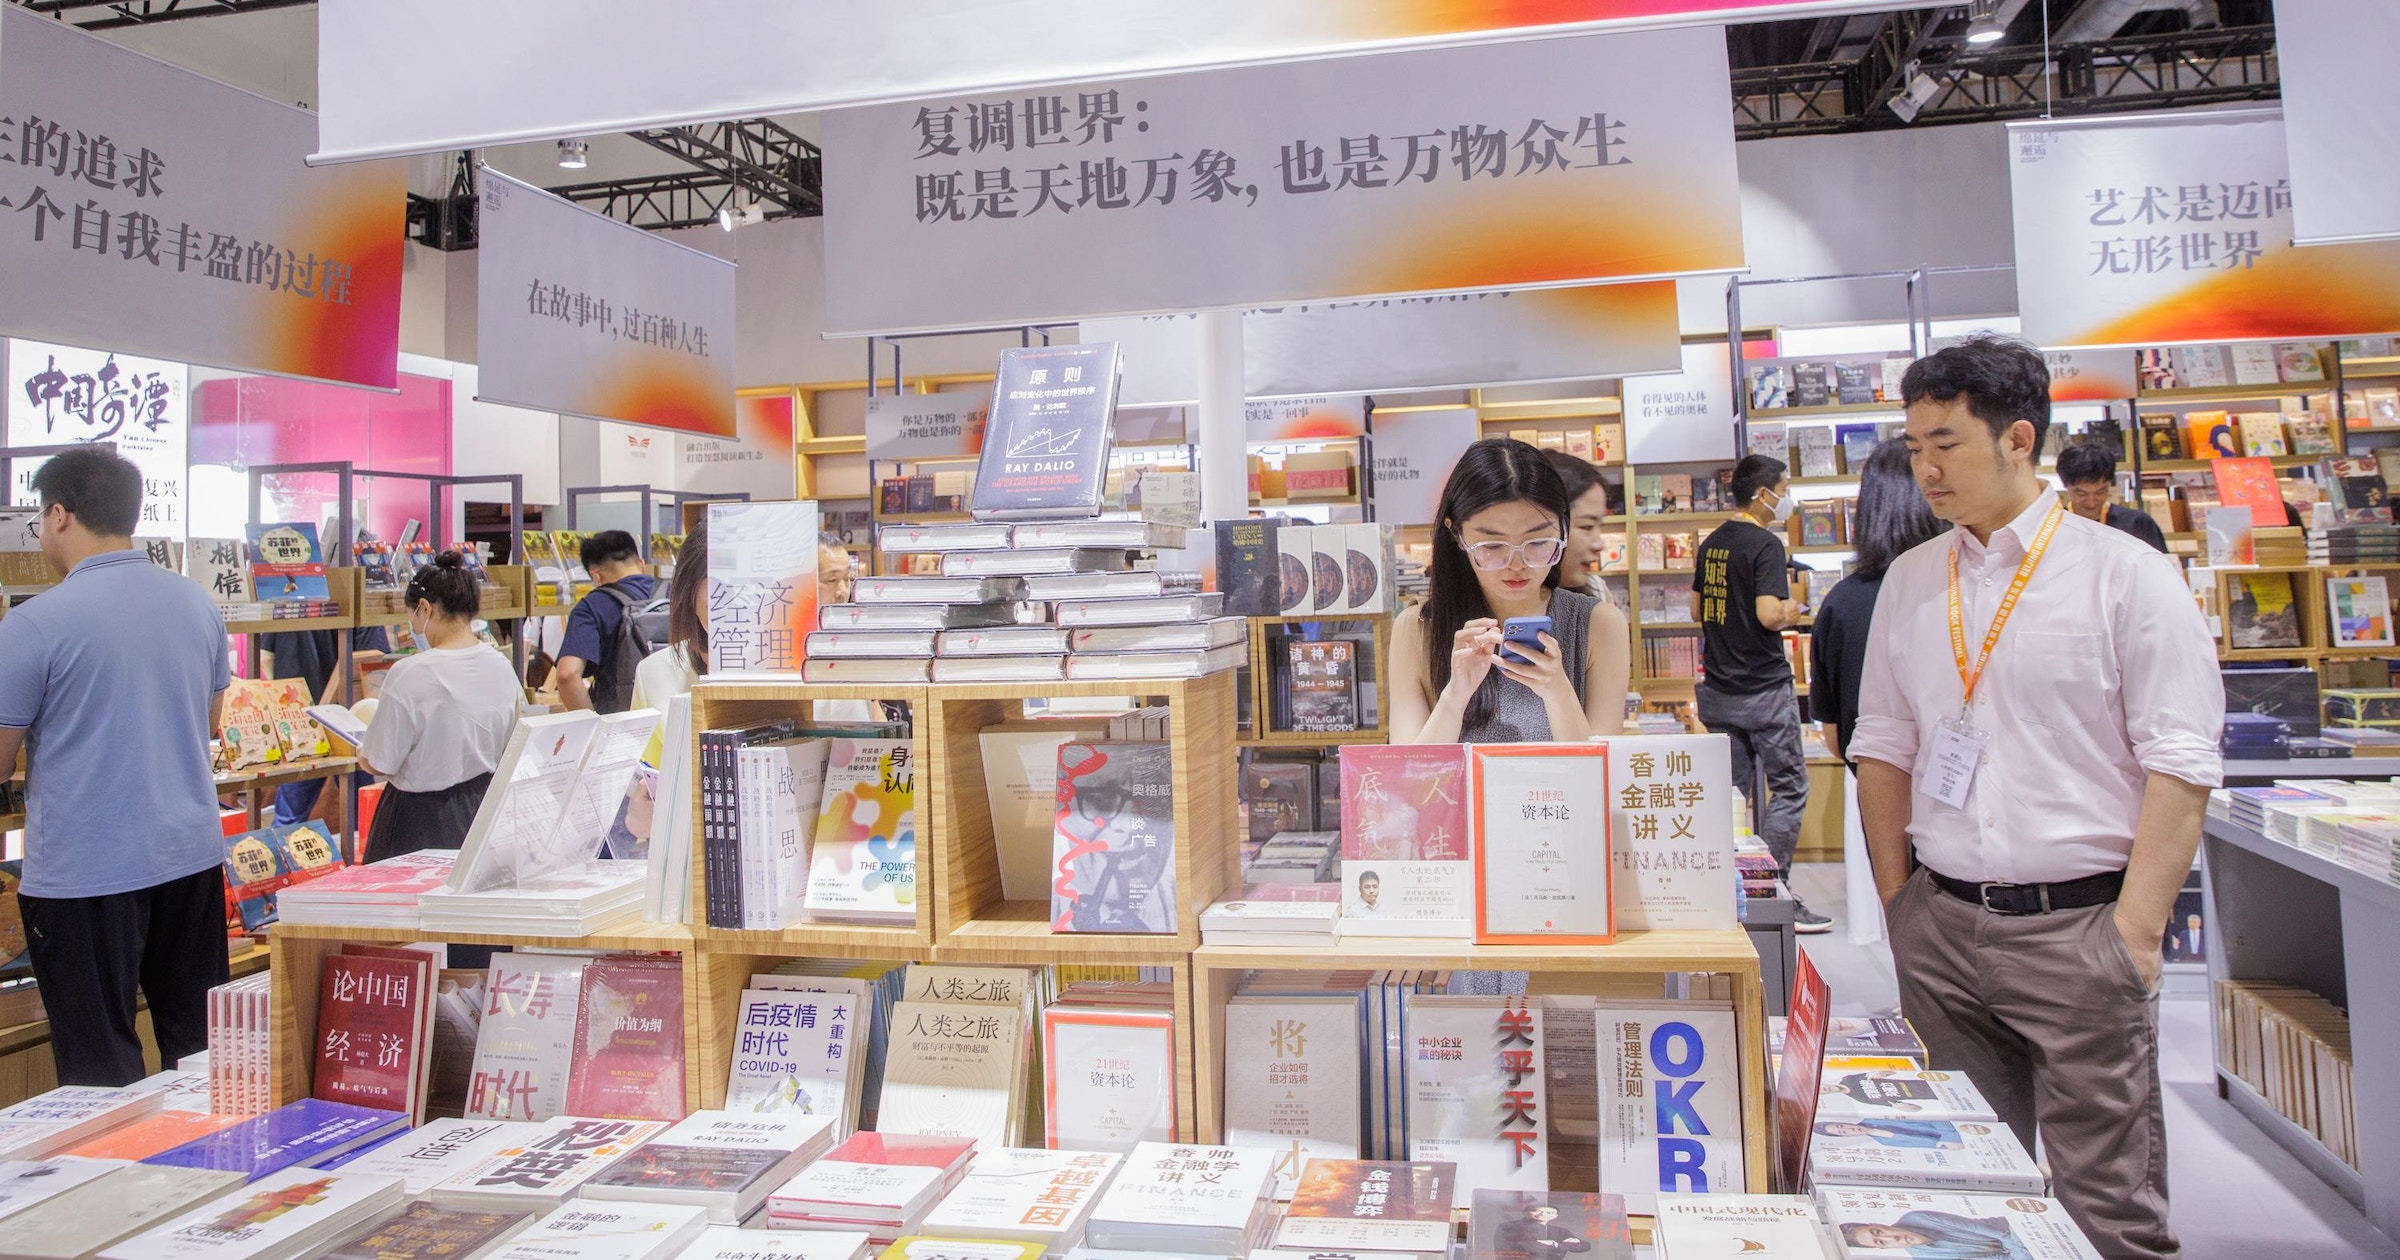 الجزائر ضيف شرف معرض بكين للكتاب